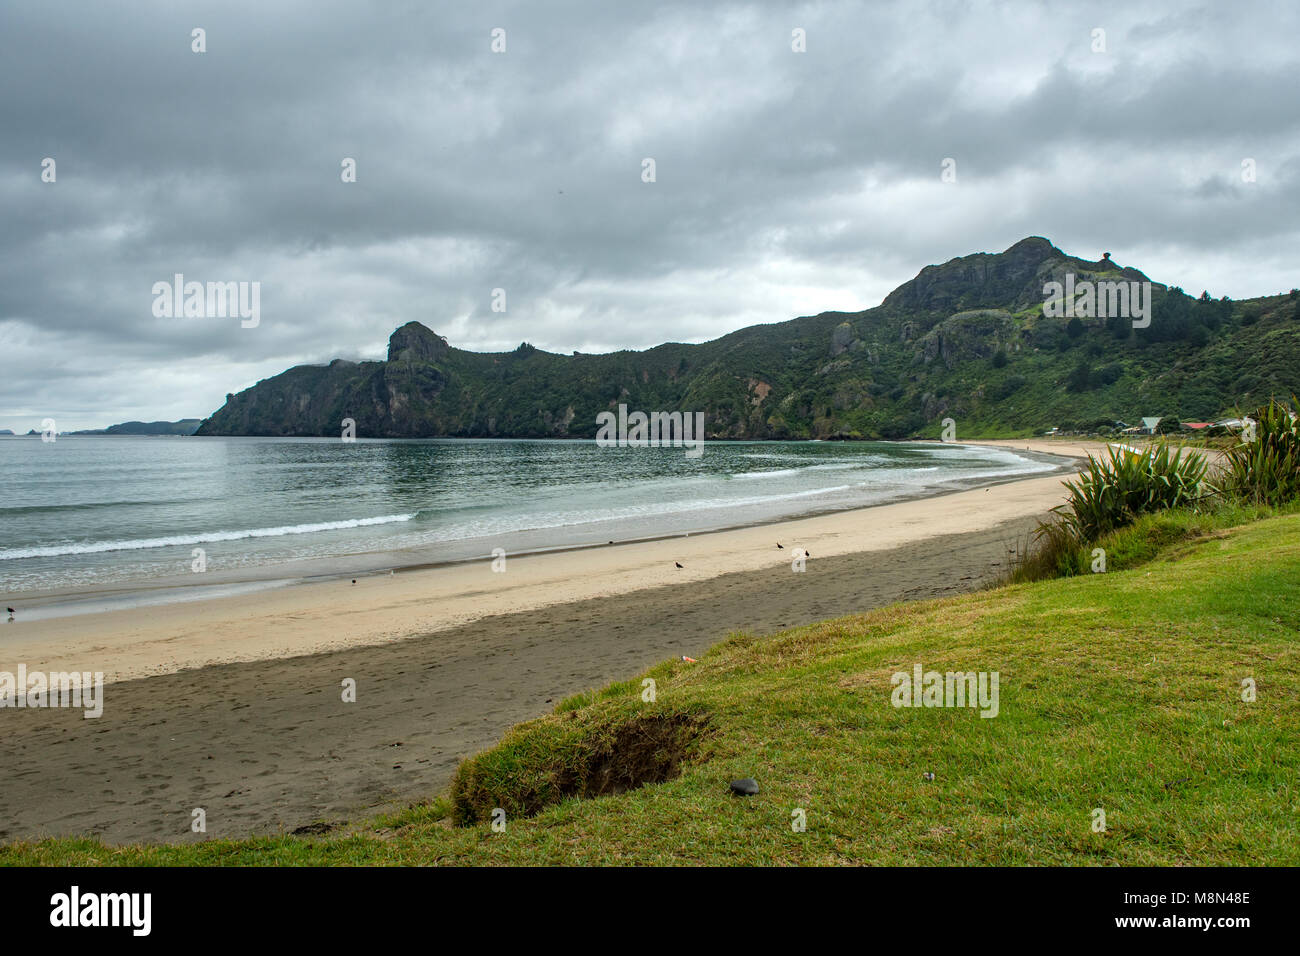 Taupo Bay Beach, North Island, New Zealand Stock Photo